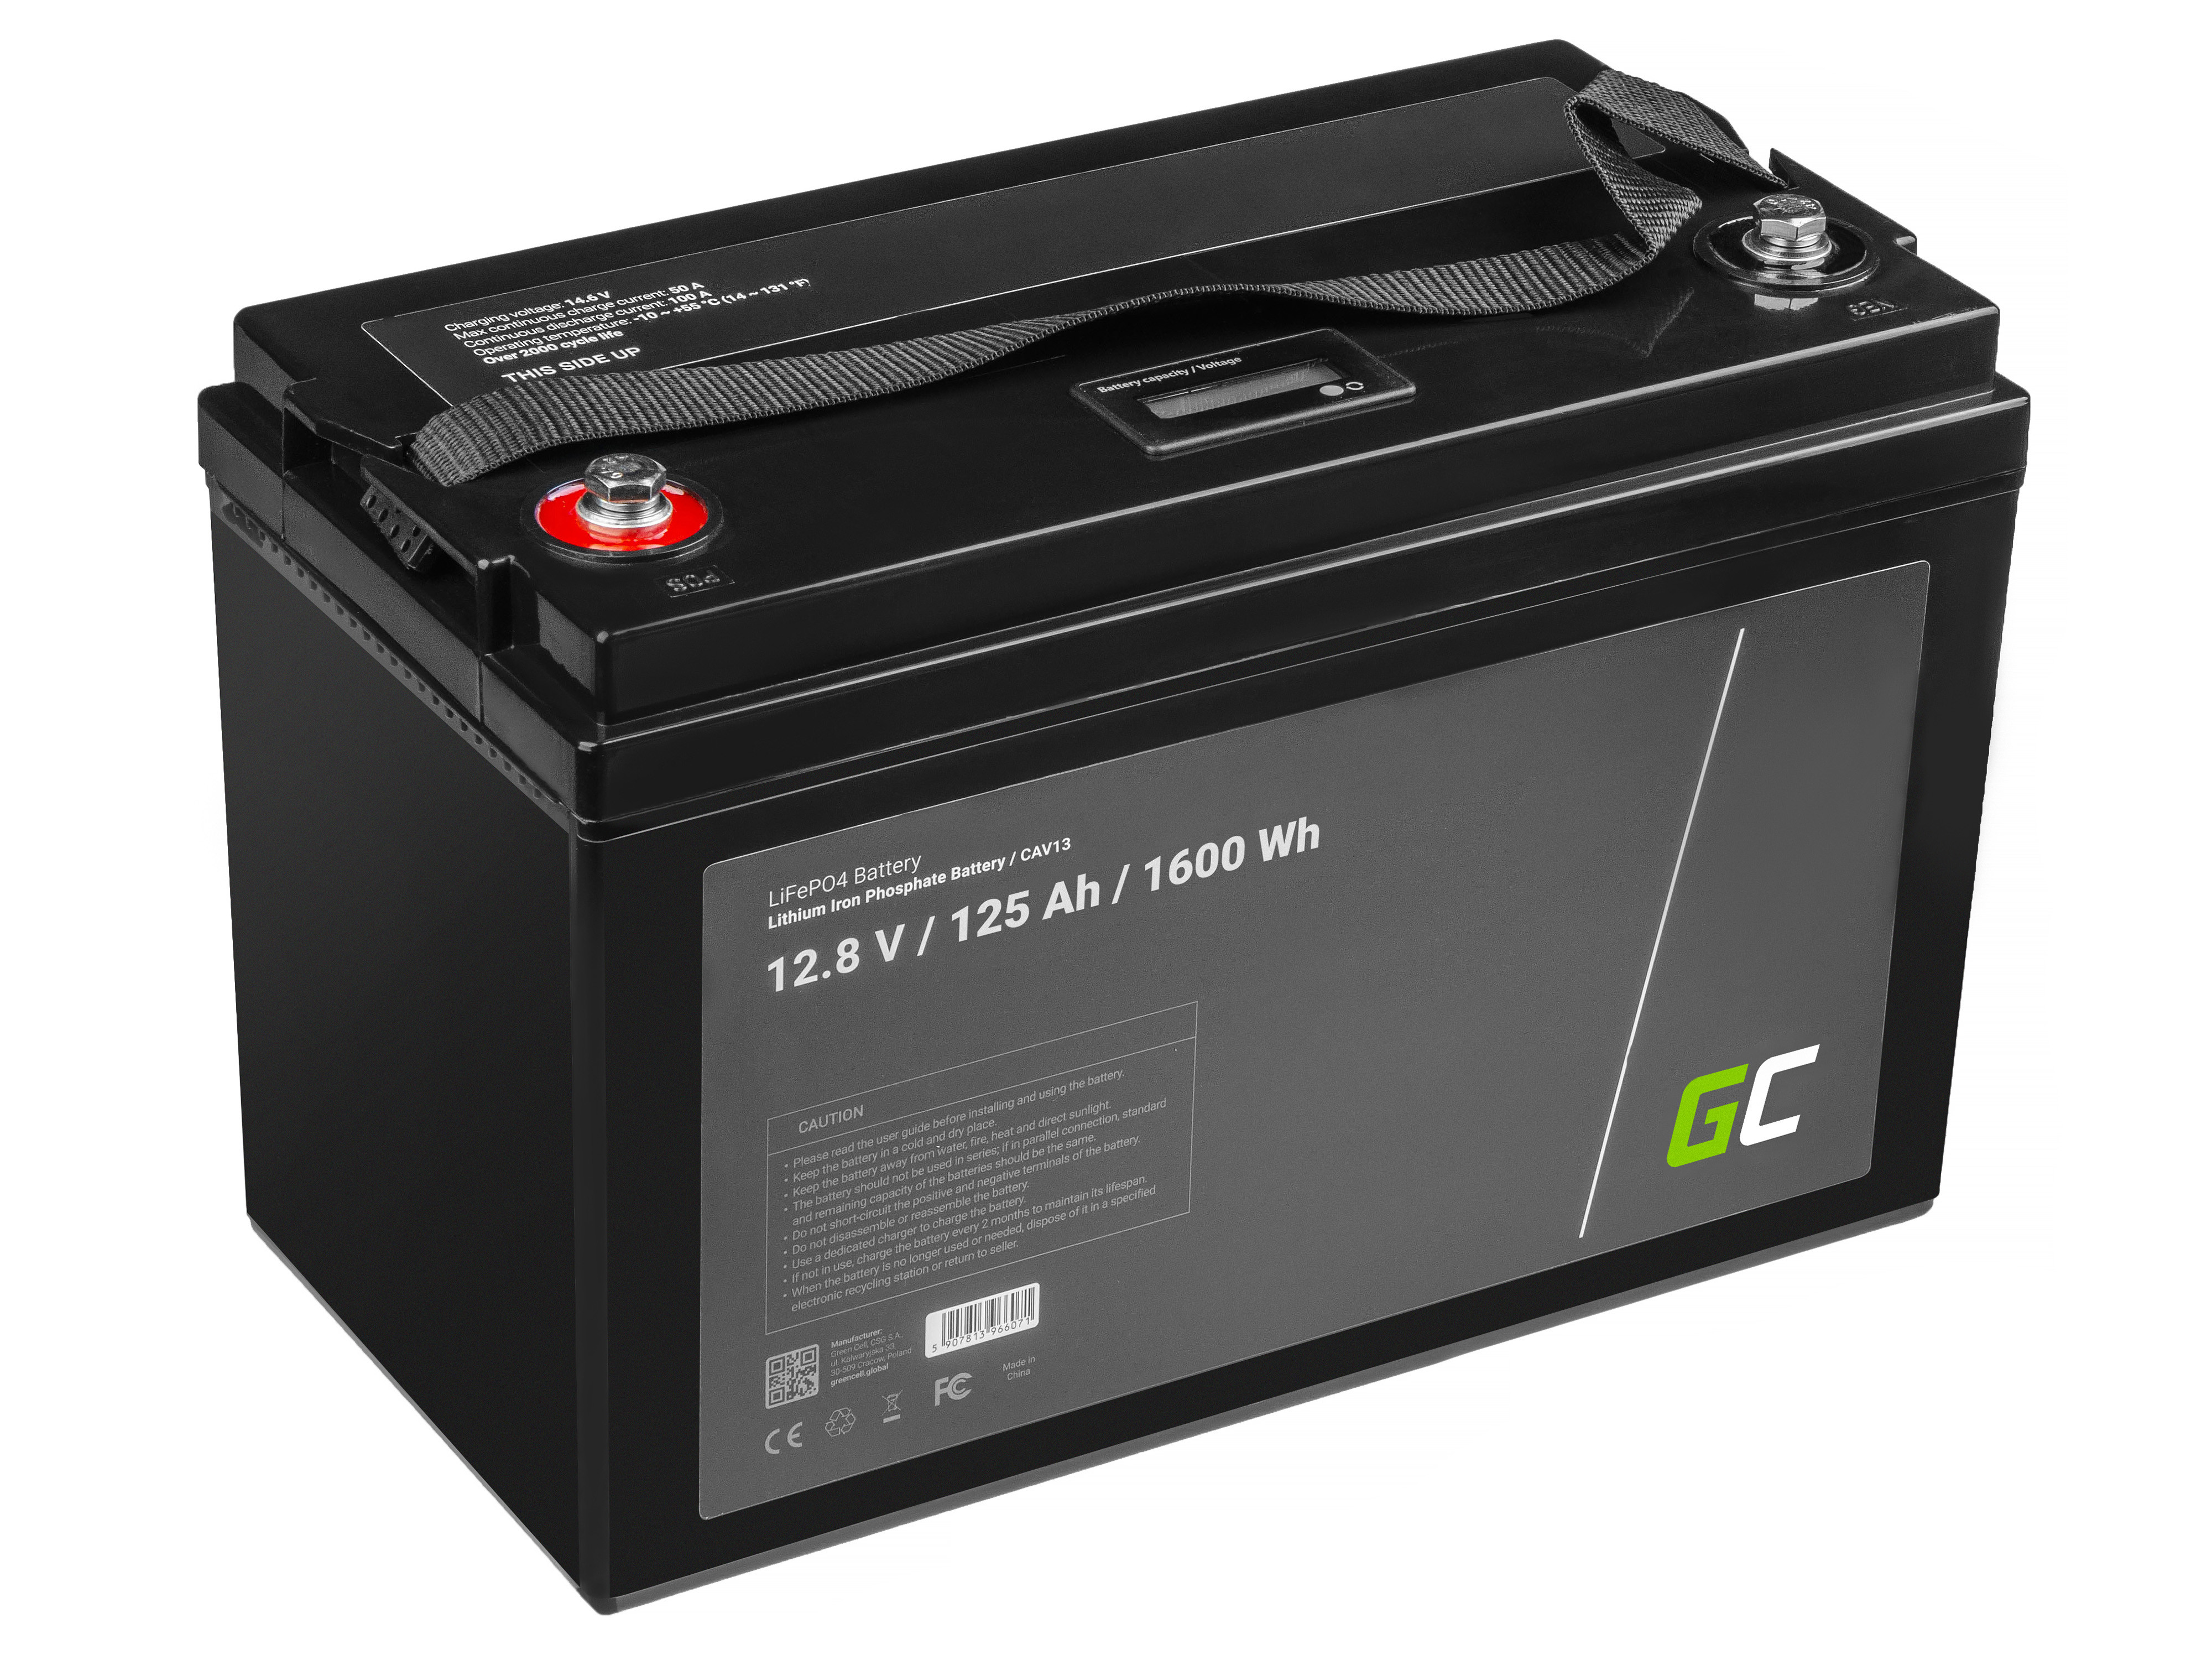 Batteri Litium-järn-fosfat LiFePO4 12V 12,8V 125Ah för solcellssystem, husbilar och båtar